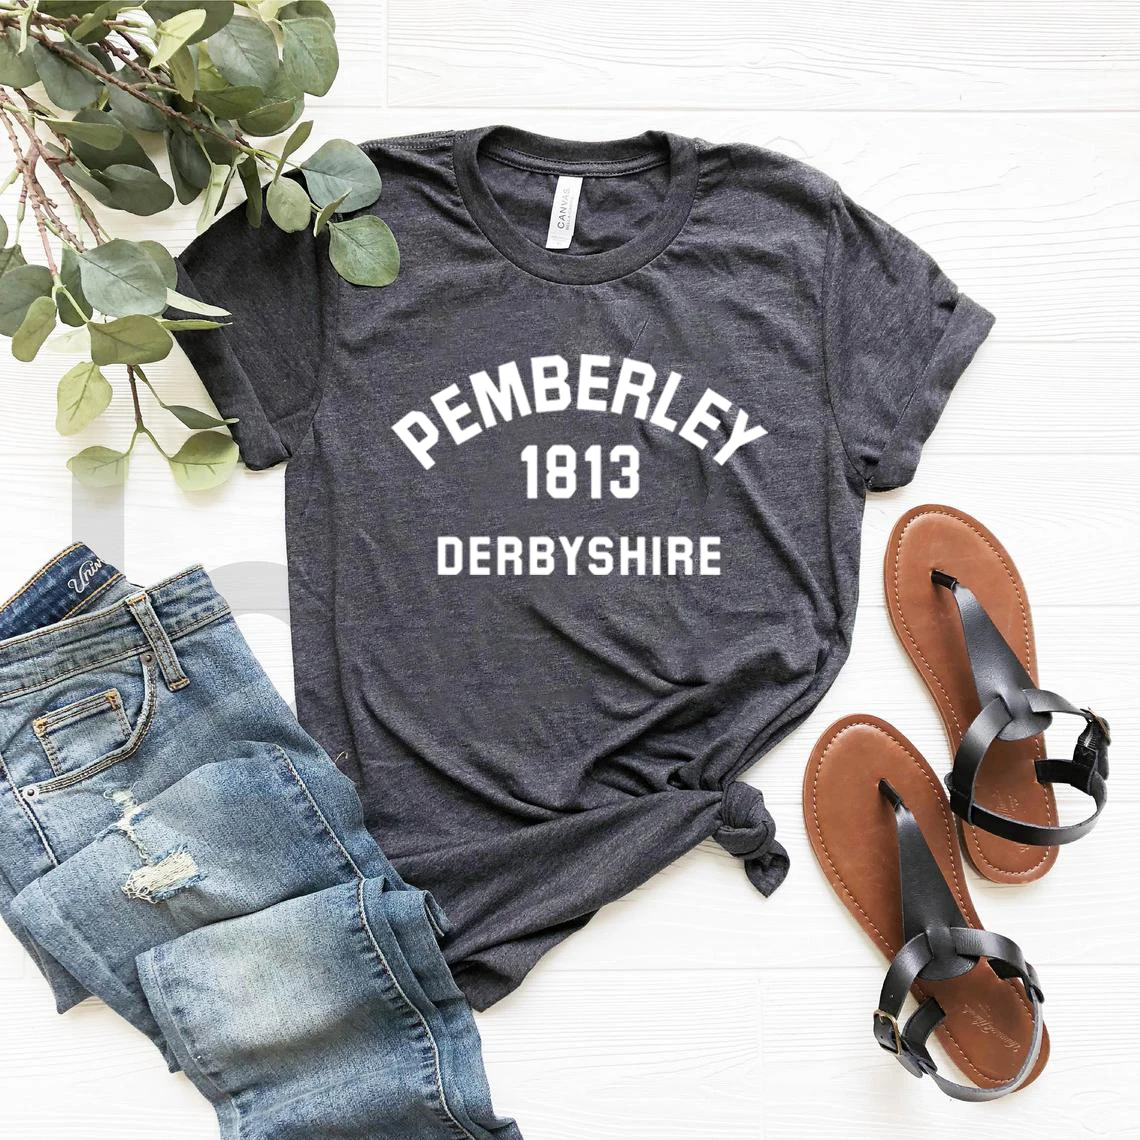 Jane Austen T-Shirt Pride and Prejudice Pemberley Shirt Pemberley 1813 Derbyshire Book Lover Tees Vintage Aesthetic Tops